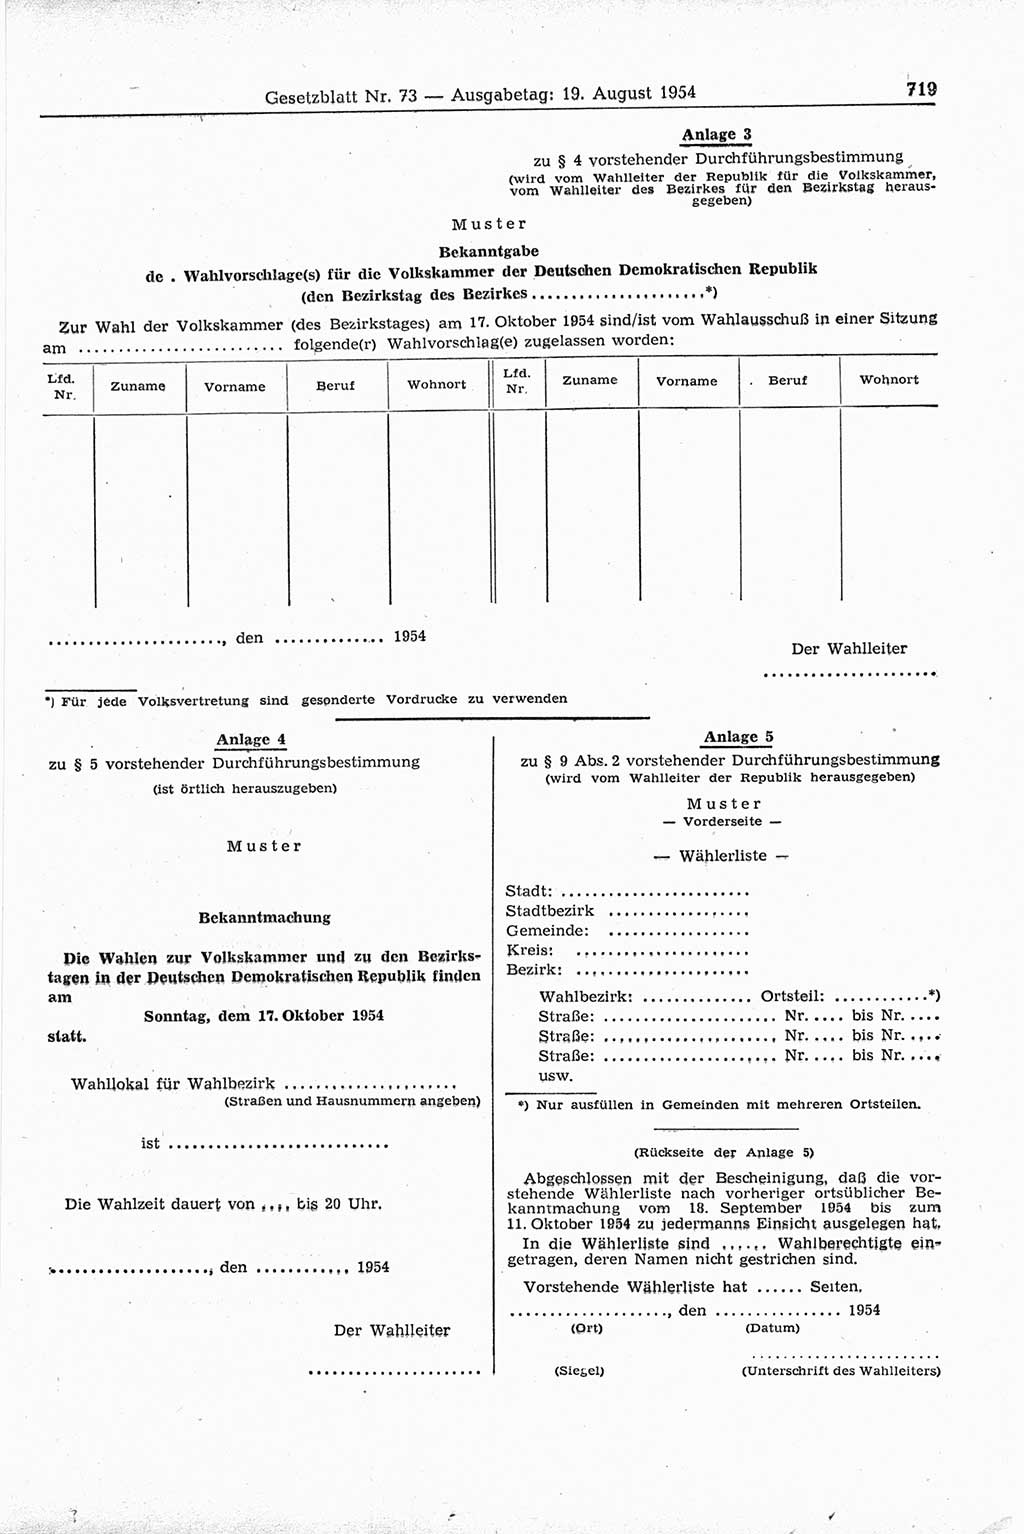 Gesetzblatt (GBl.) der Deutschen Demokratischen Republik (DDR) 1954, Seite 719 (GBl. DDR 1954, S. 719)